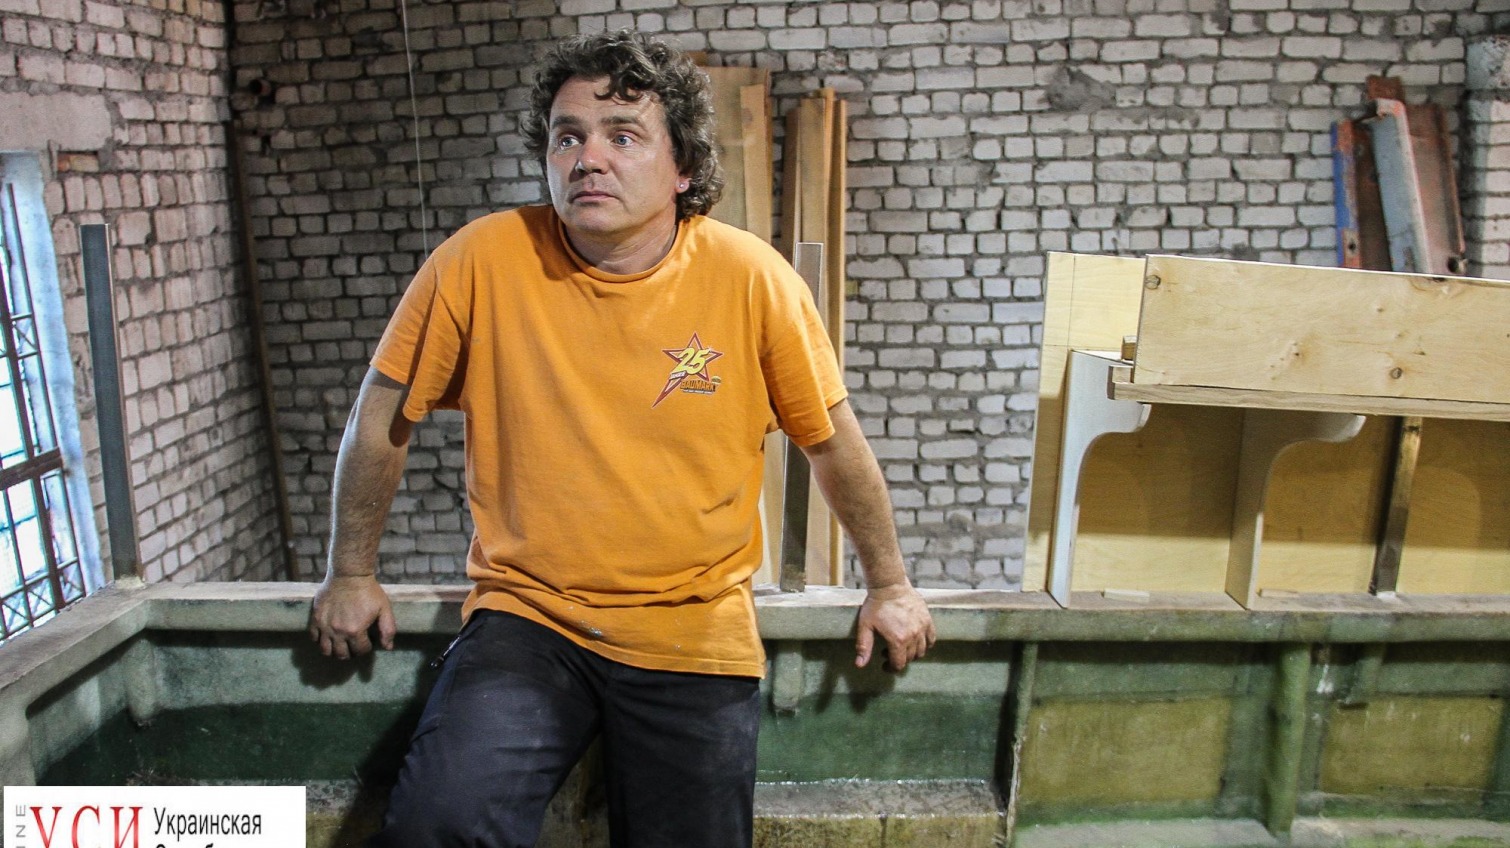 Одесский путешественник строит в гараже яхту для кругосветного путешествия (фото) «фото»